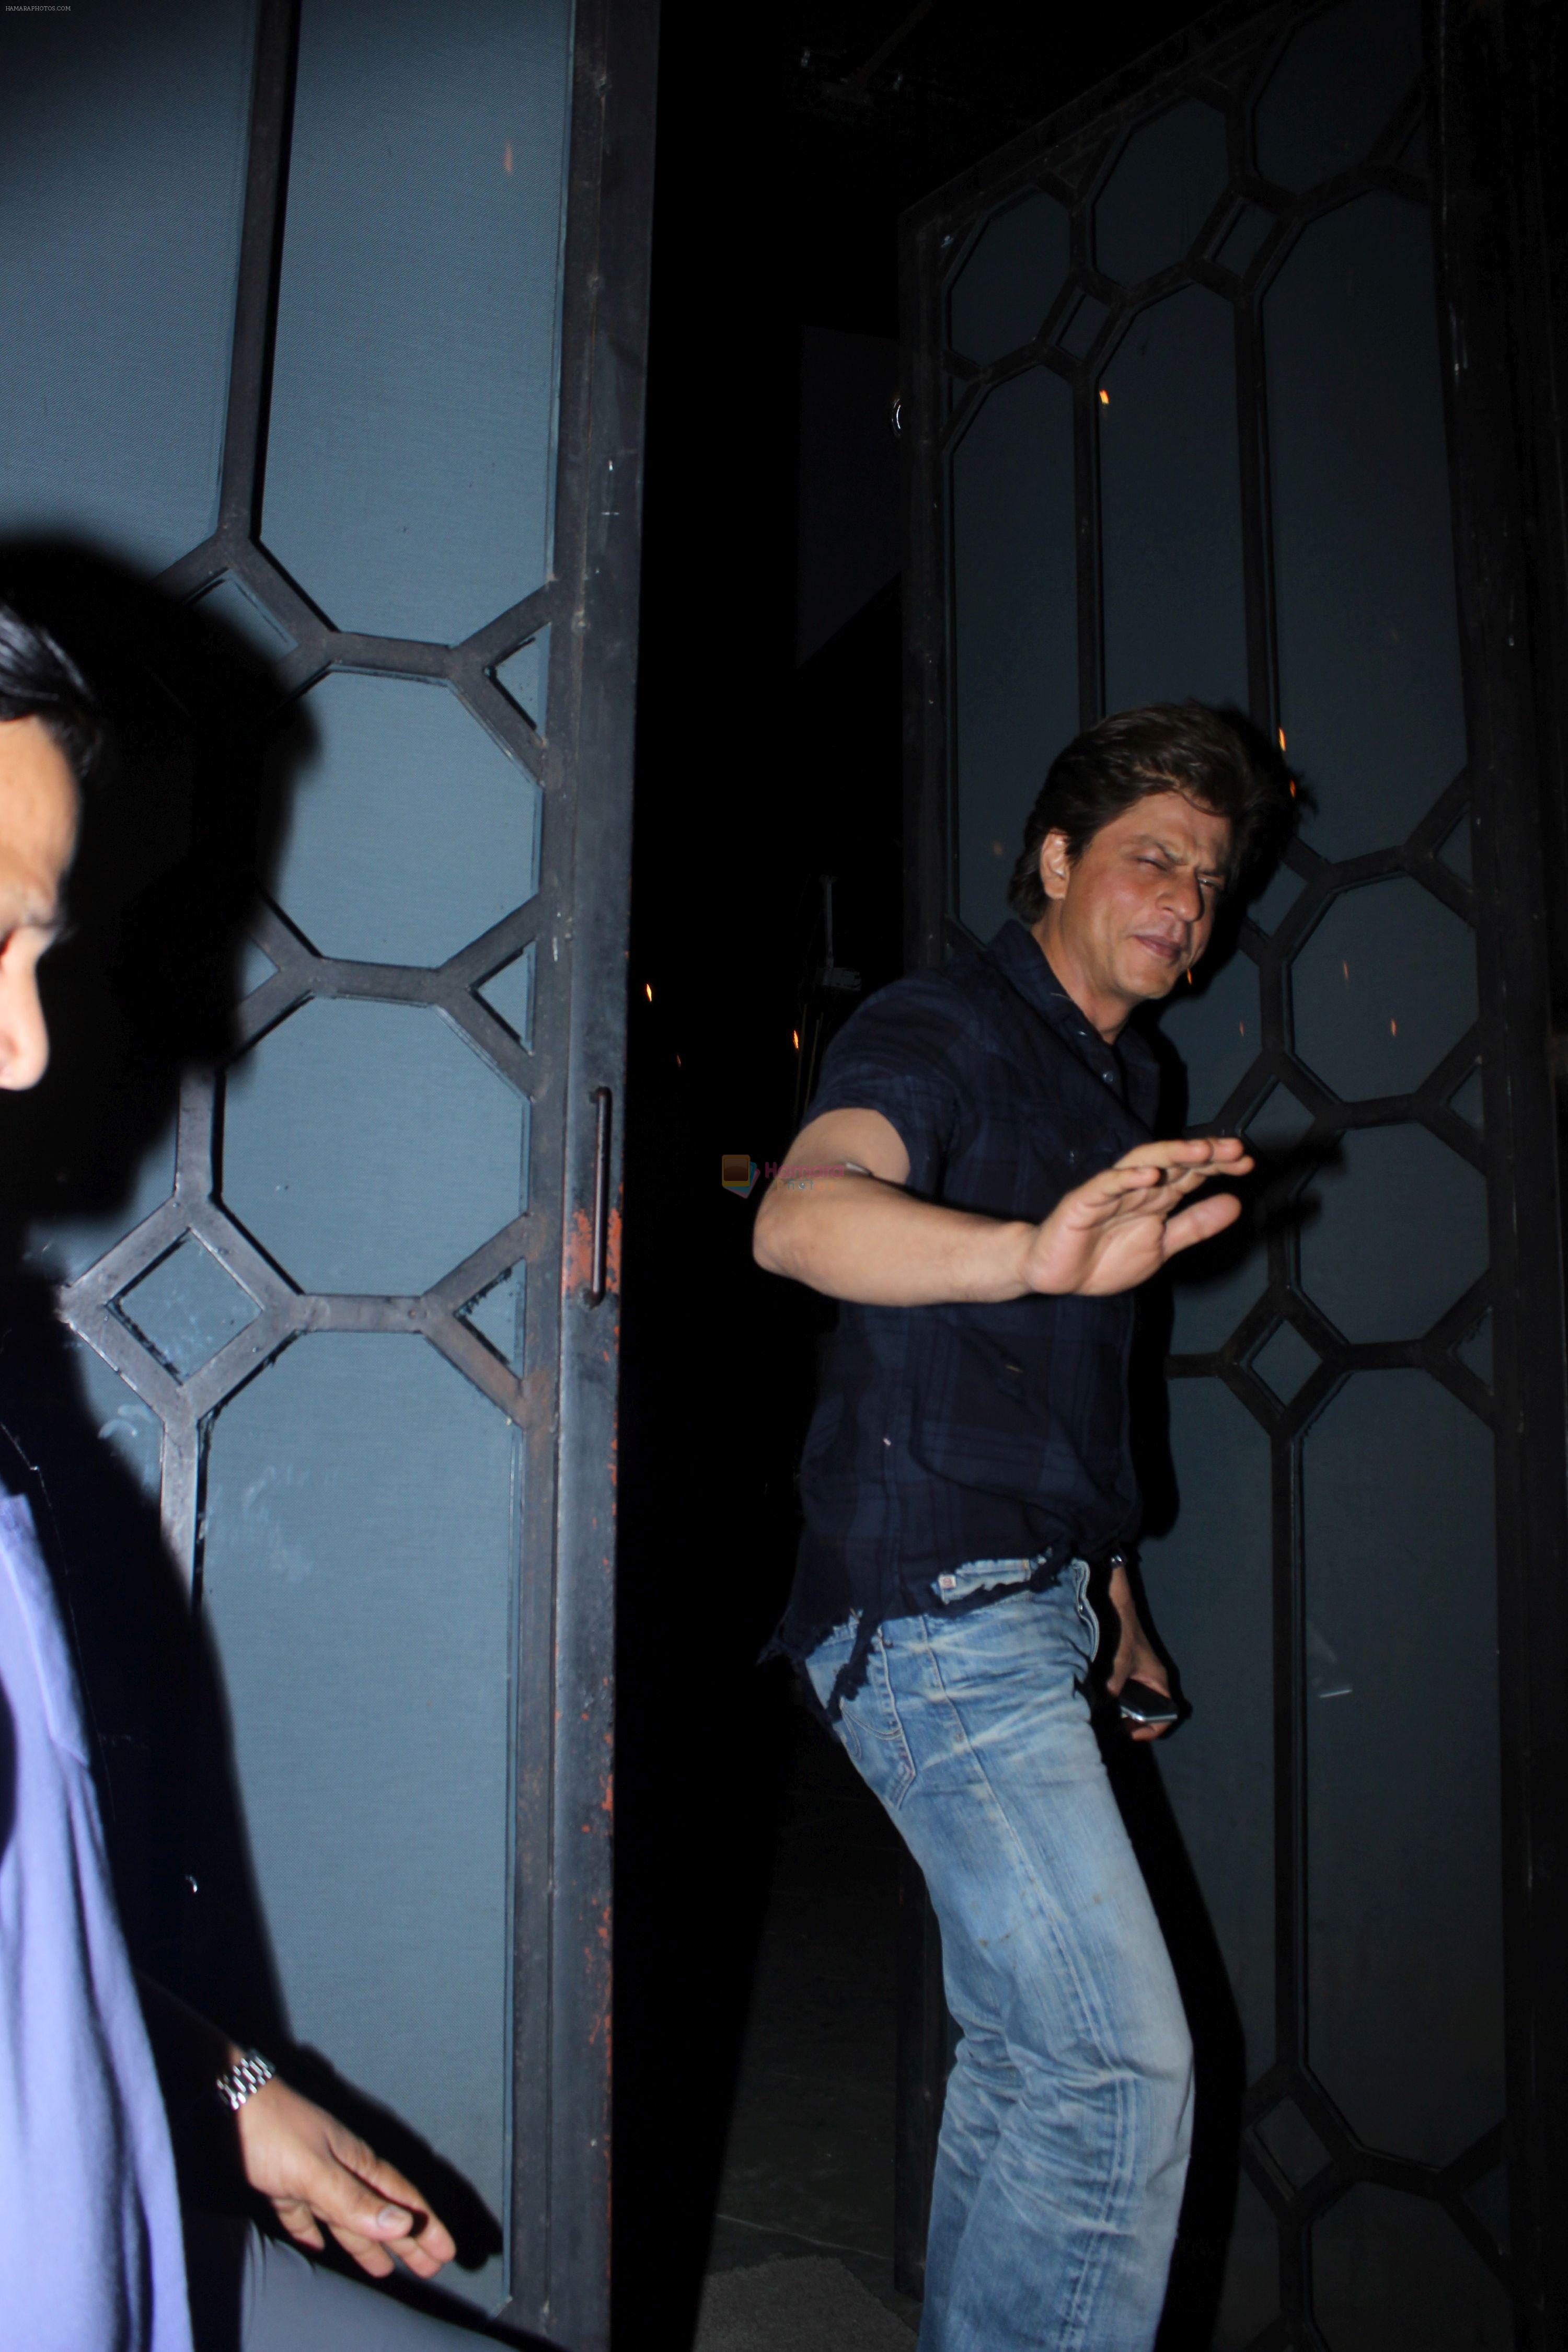 Shah Rukh khan at korner house 2 on 10th June 2017